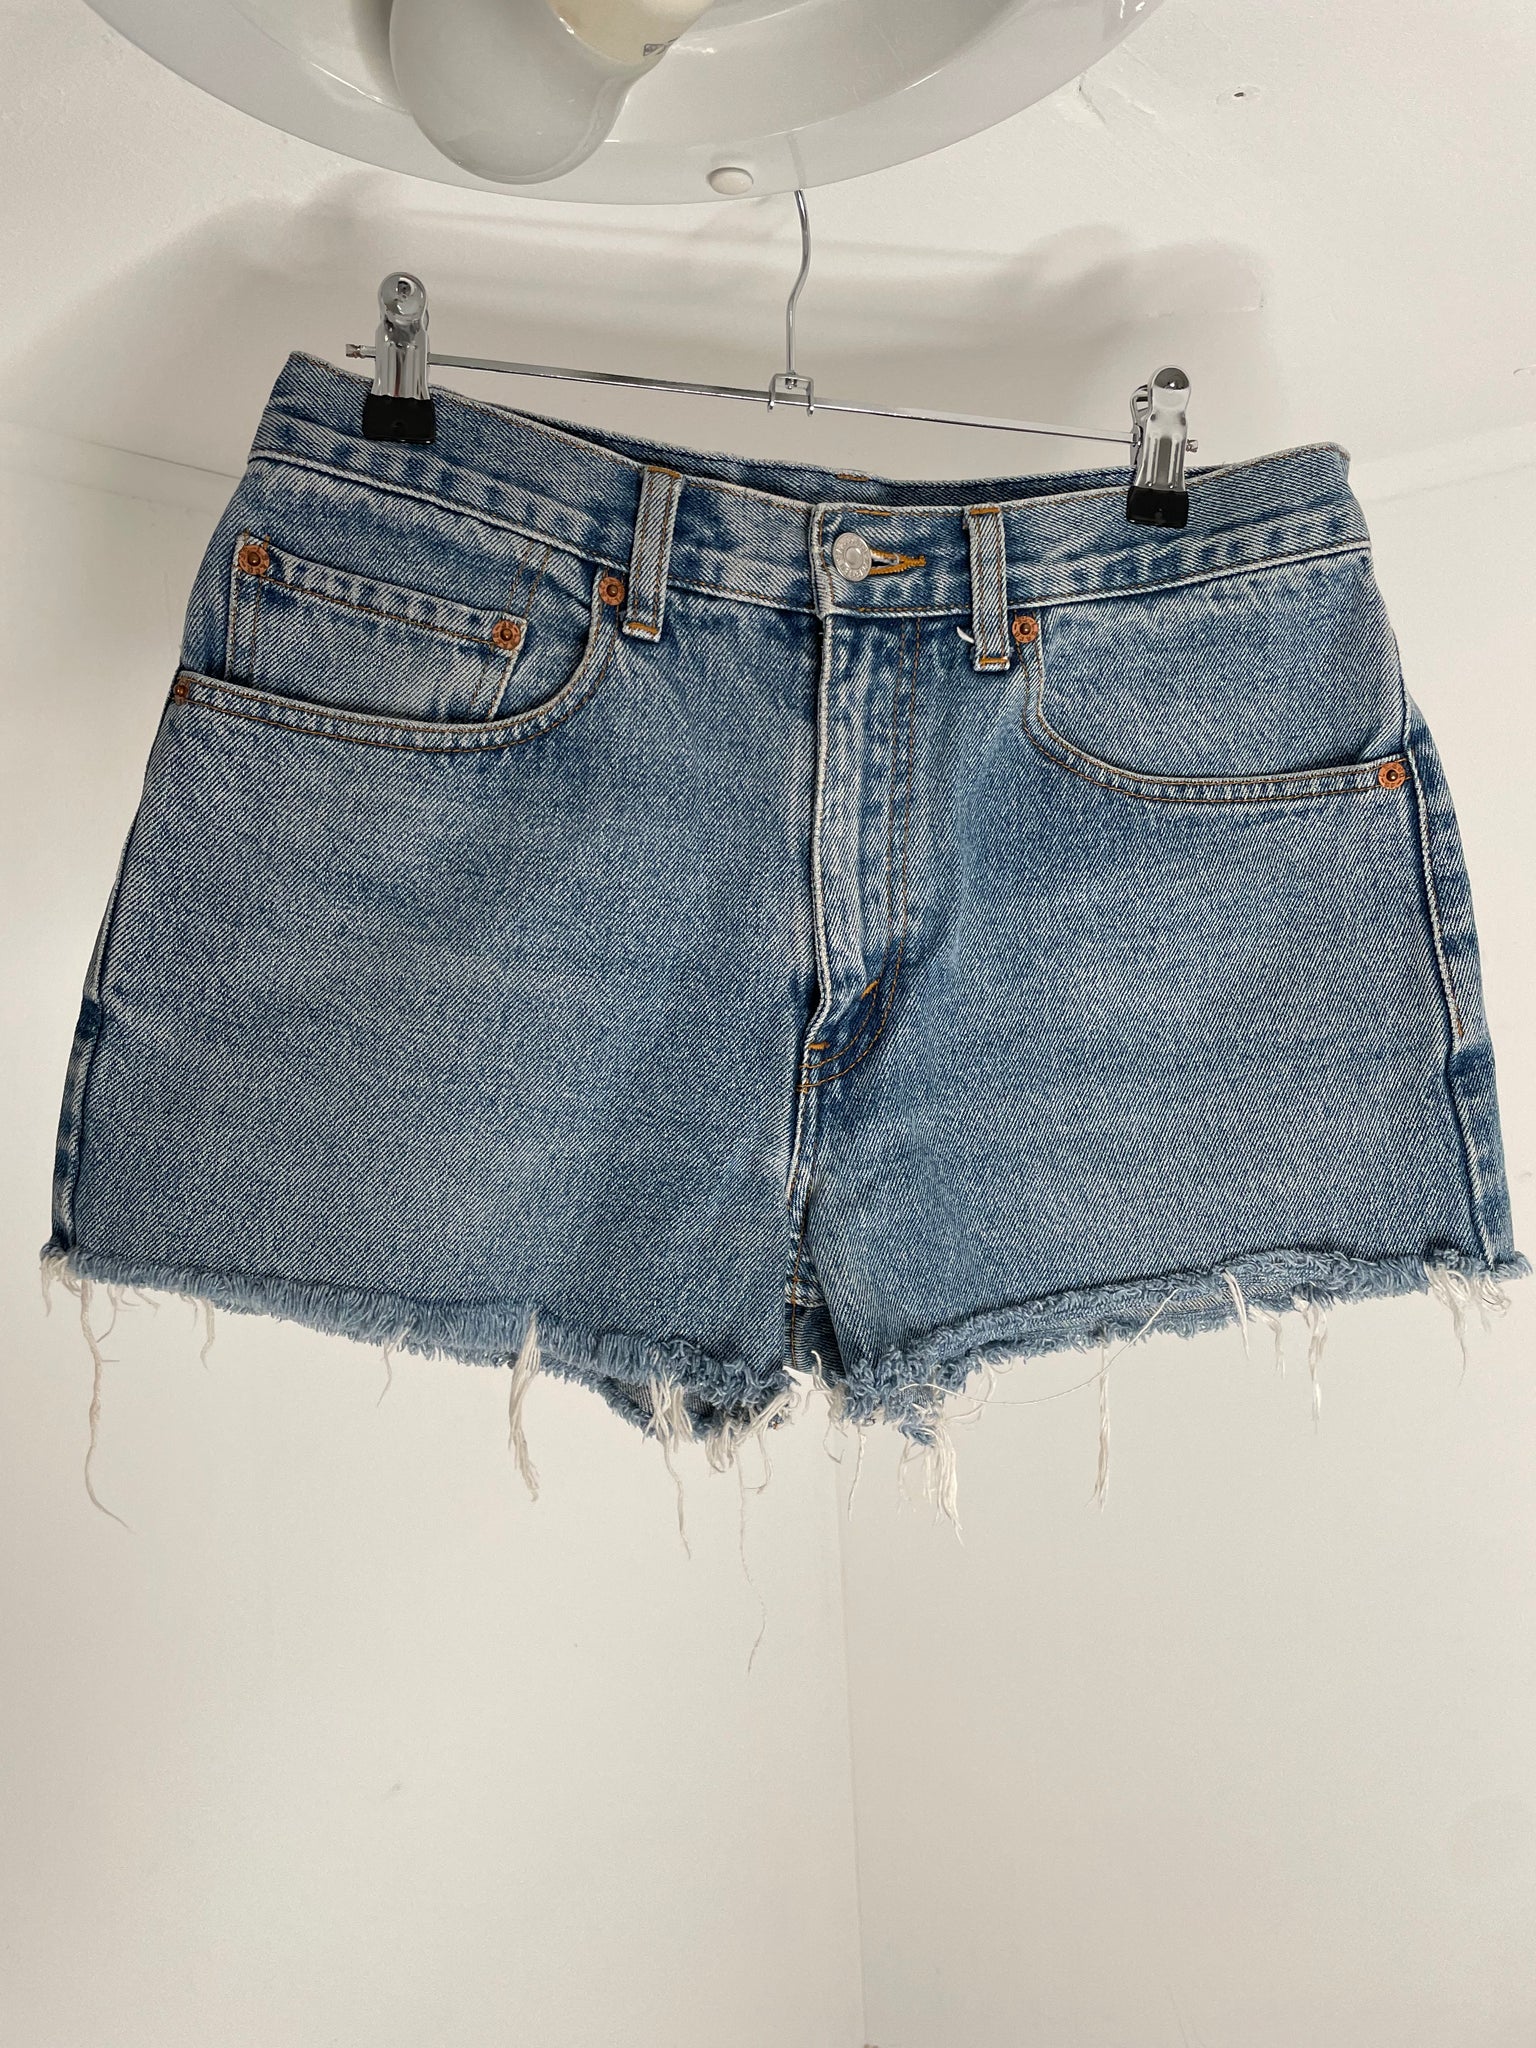 Vintage Levis Blue Shorts 31x30